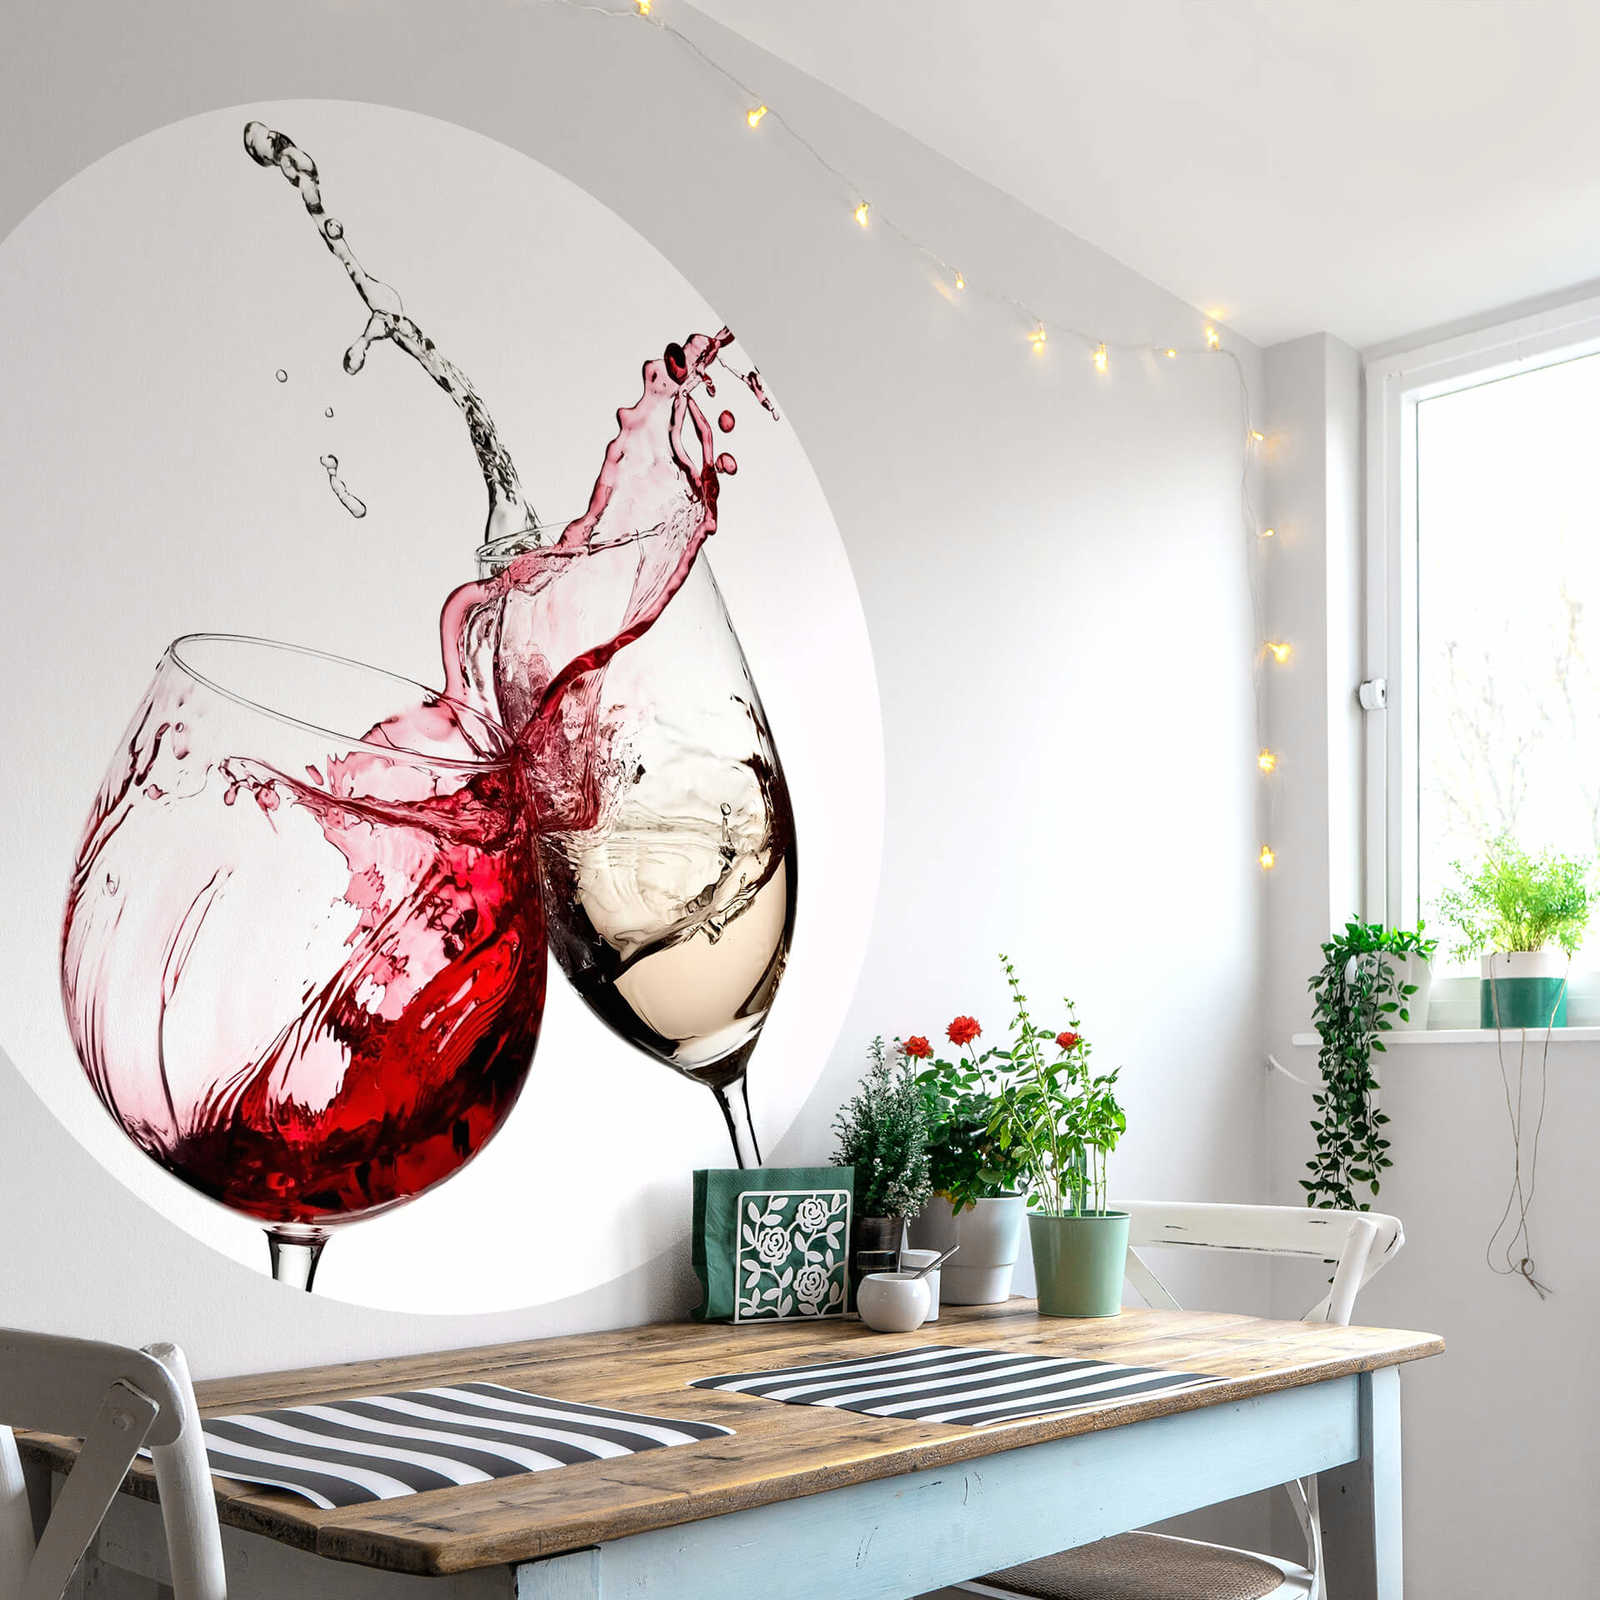             Küchen Fototapete Getränke im Glas, Wein Rot & Weiß
        